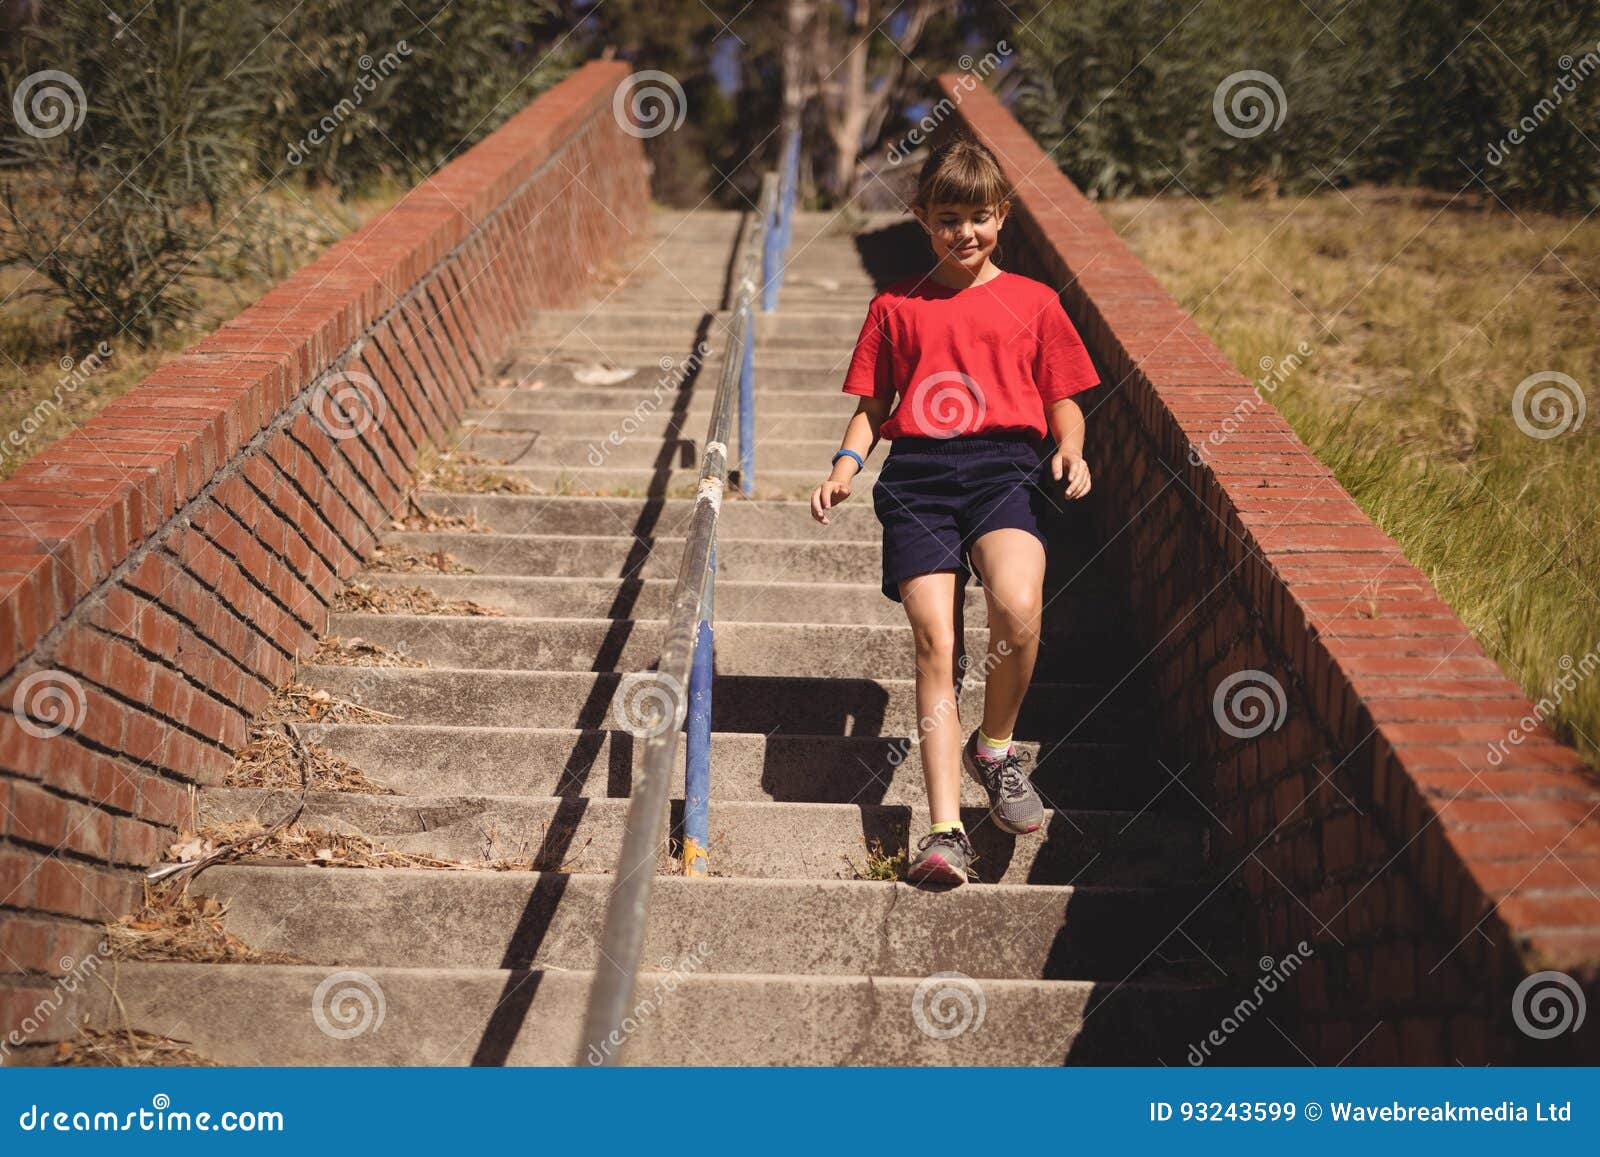 Обнаруживают что забыли опустить лестницу. Человек спускается по лестнице. Человек спускается по ступенькам. Селовек спускаеися по лес Нице. Человек спускается с лестницы.